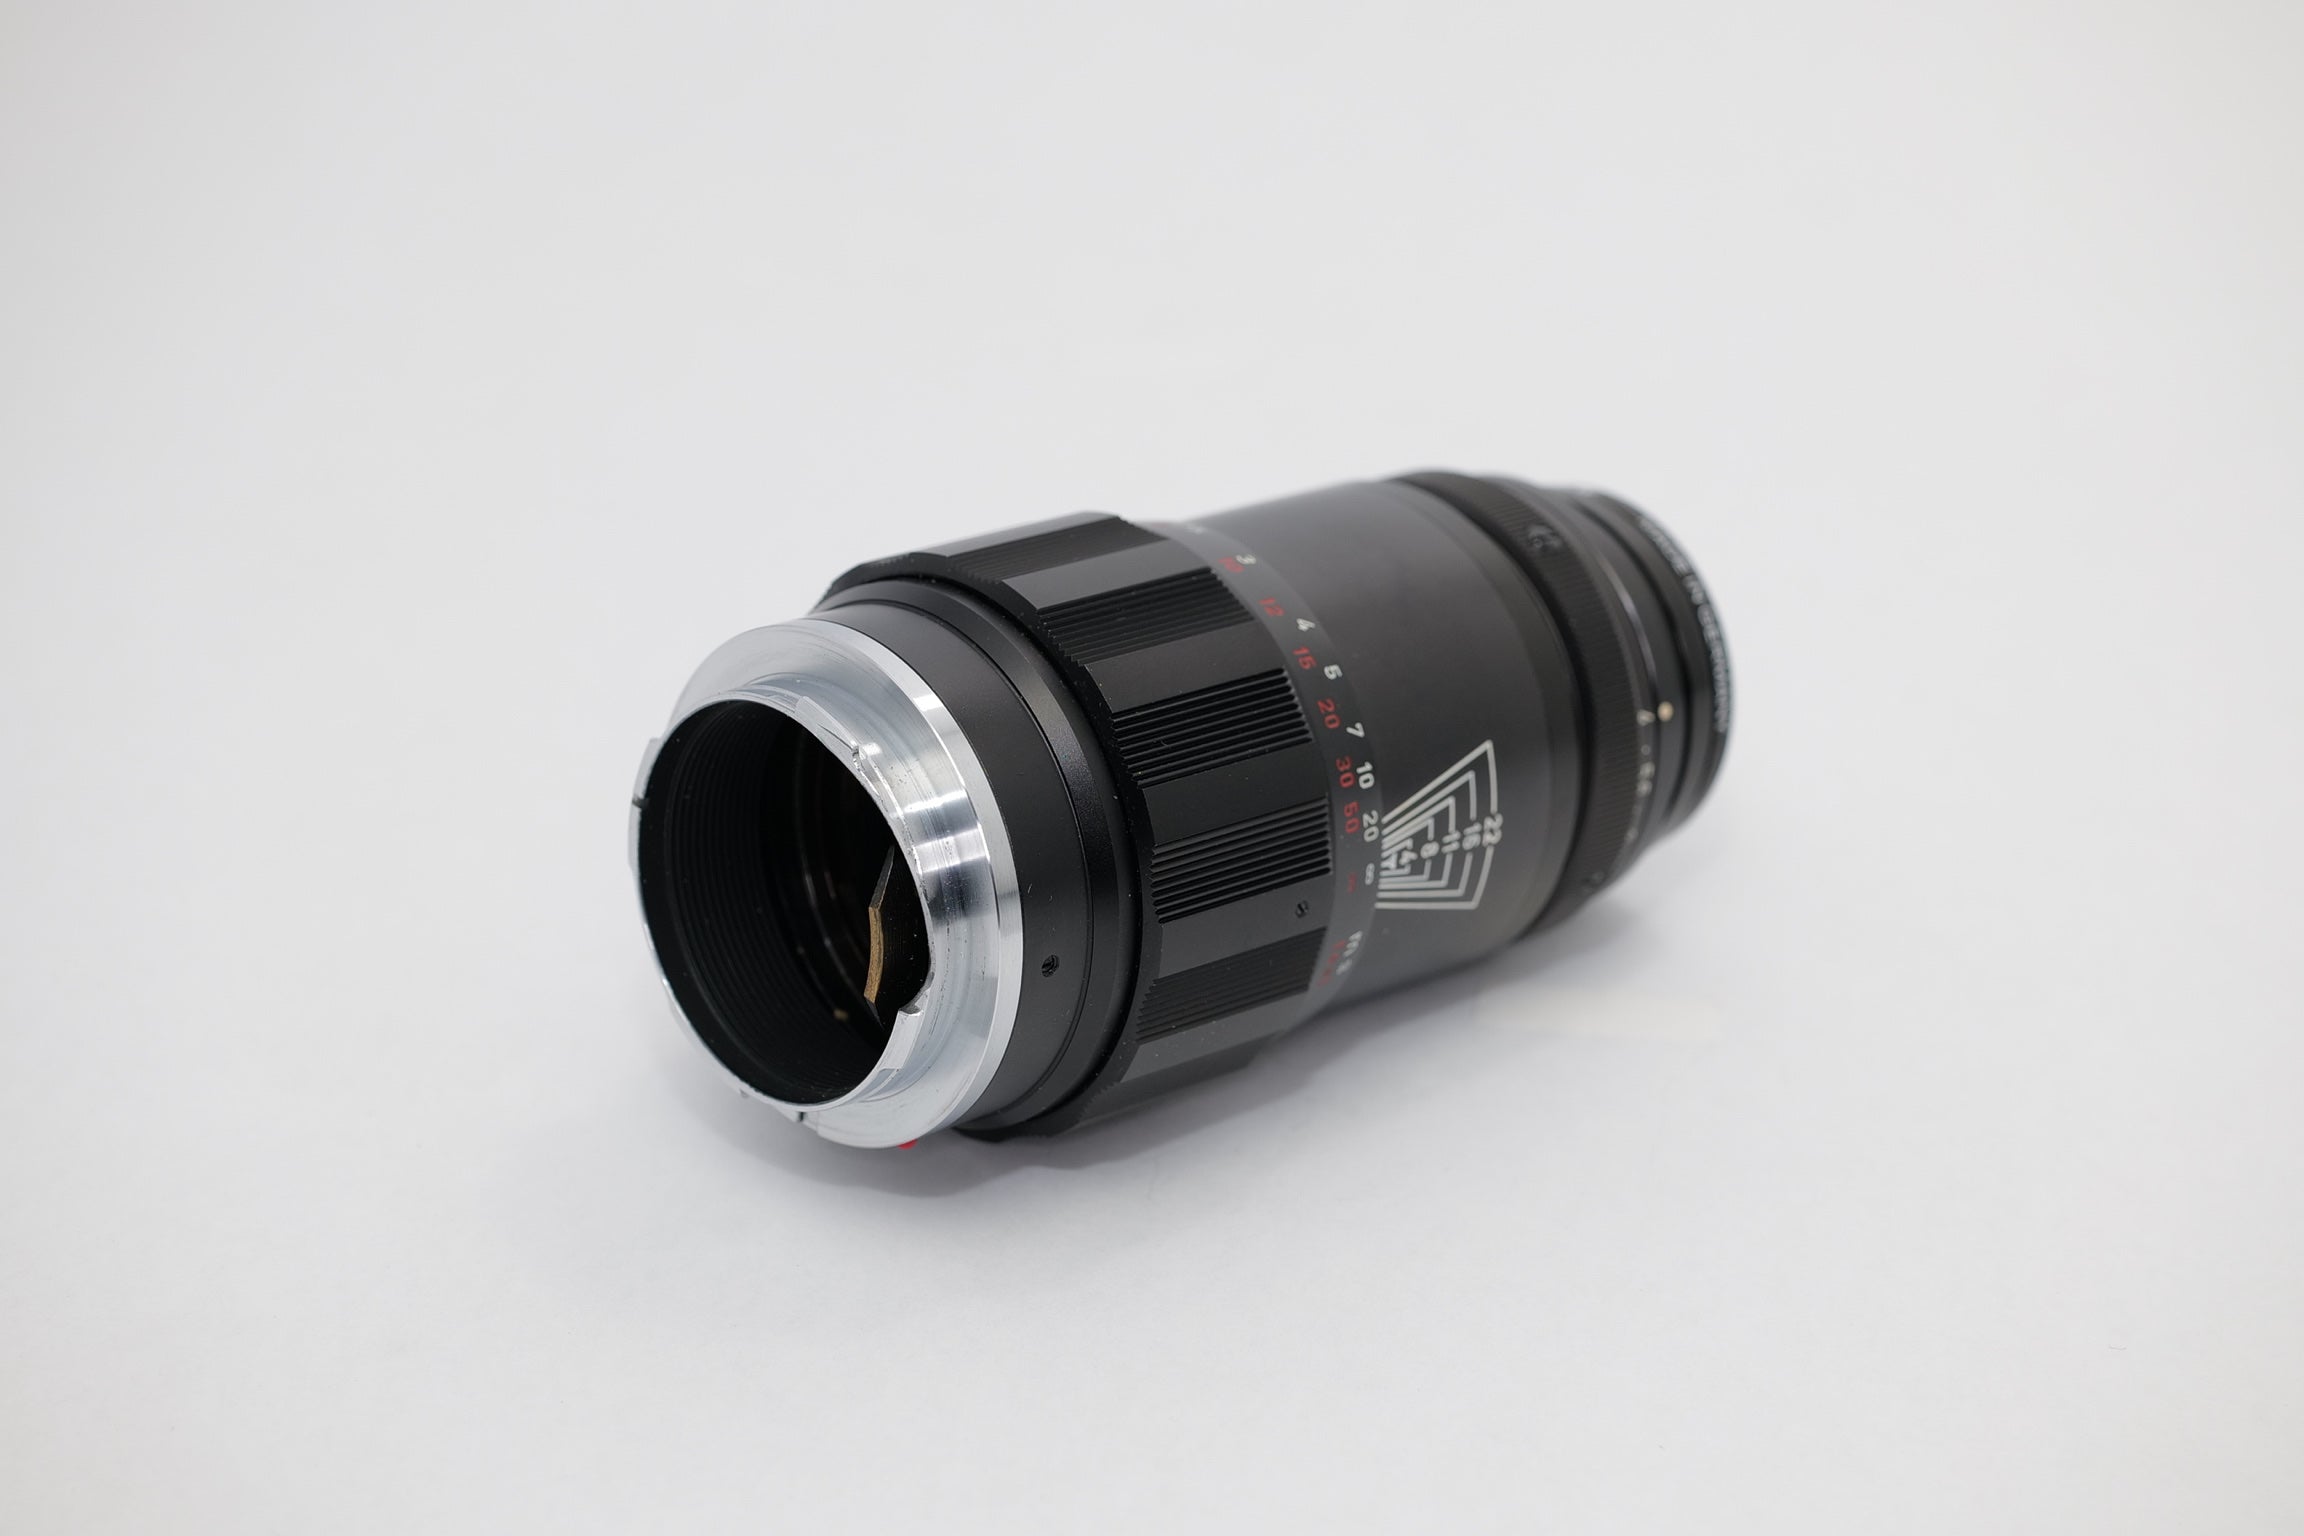 Leica Tele-Elmar M 135mm/F4.0 E39 Lens